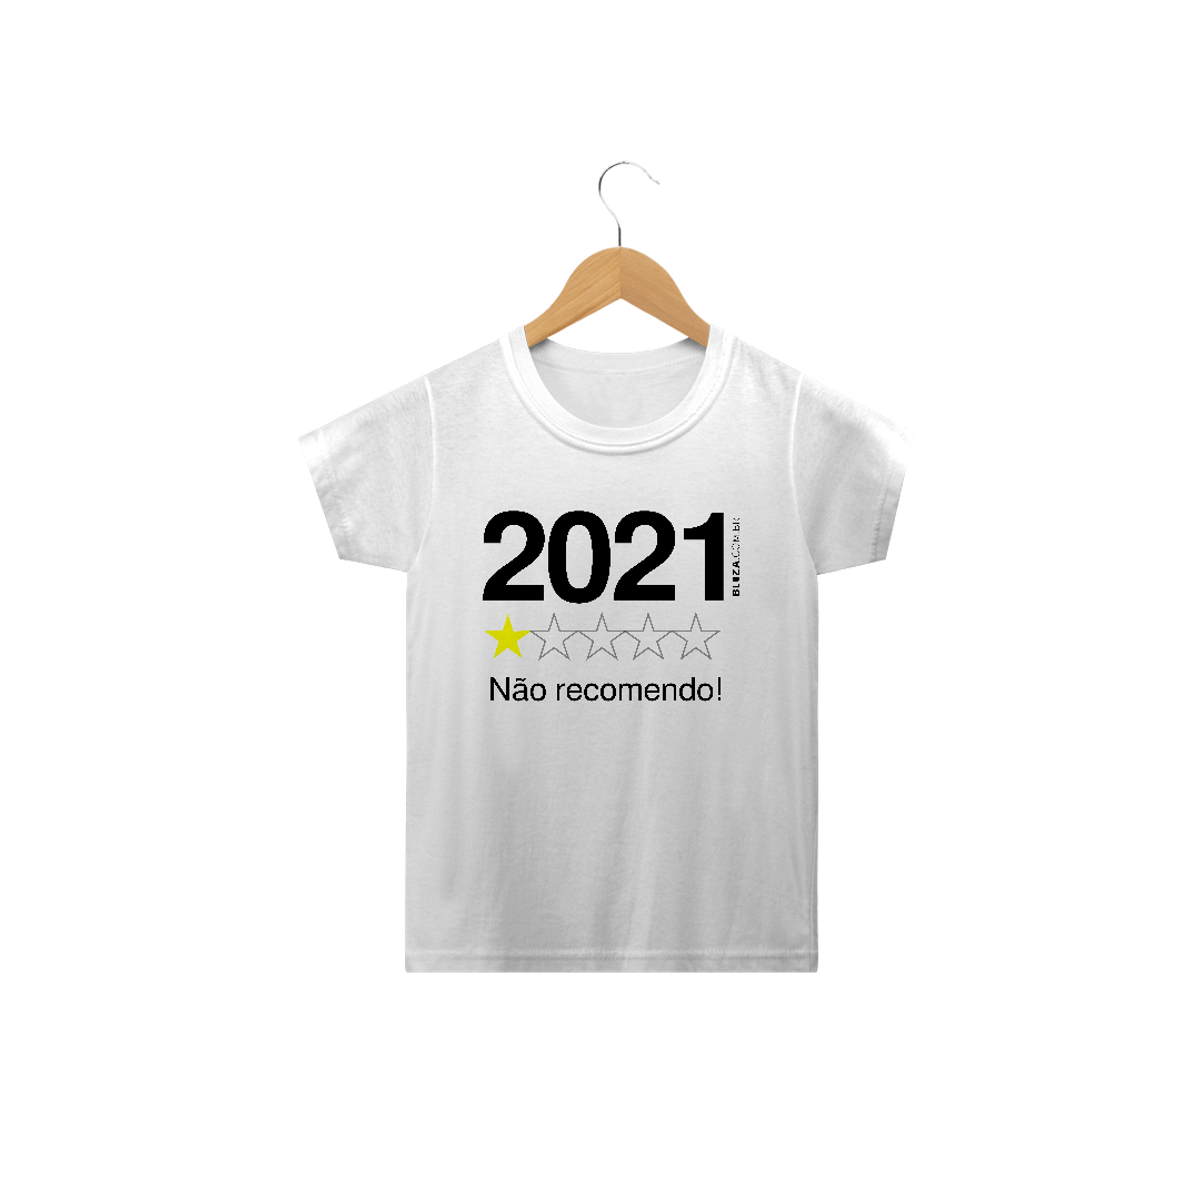 Nome do produto2021. Não recomendo, Camiseta Infantil, Bluza.com.br